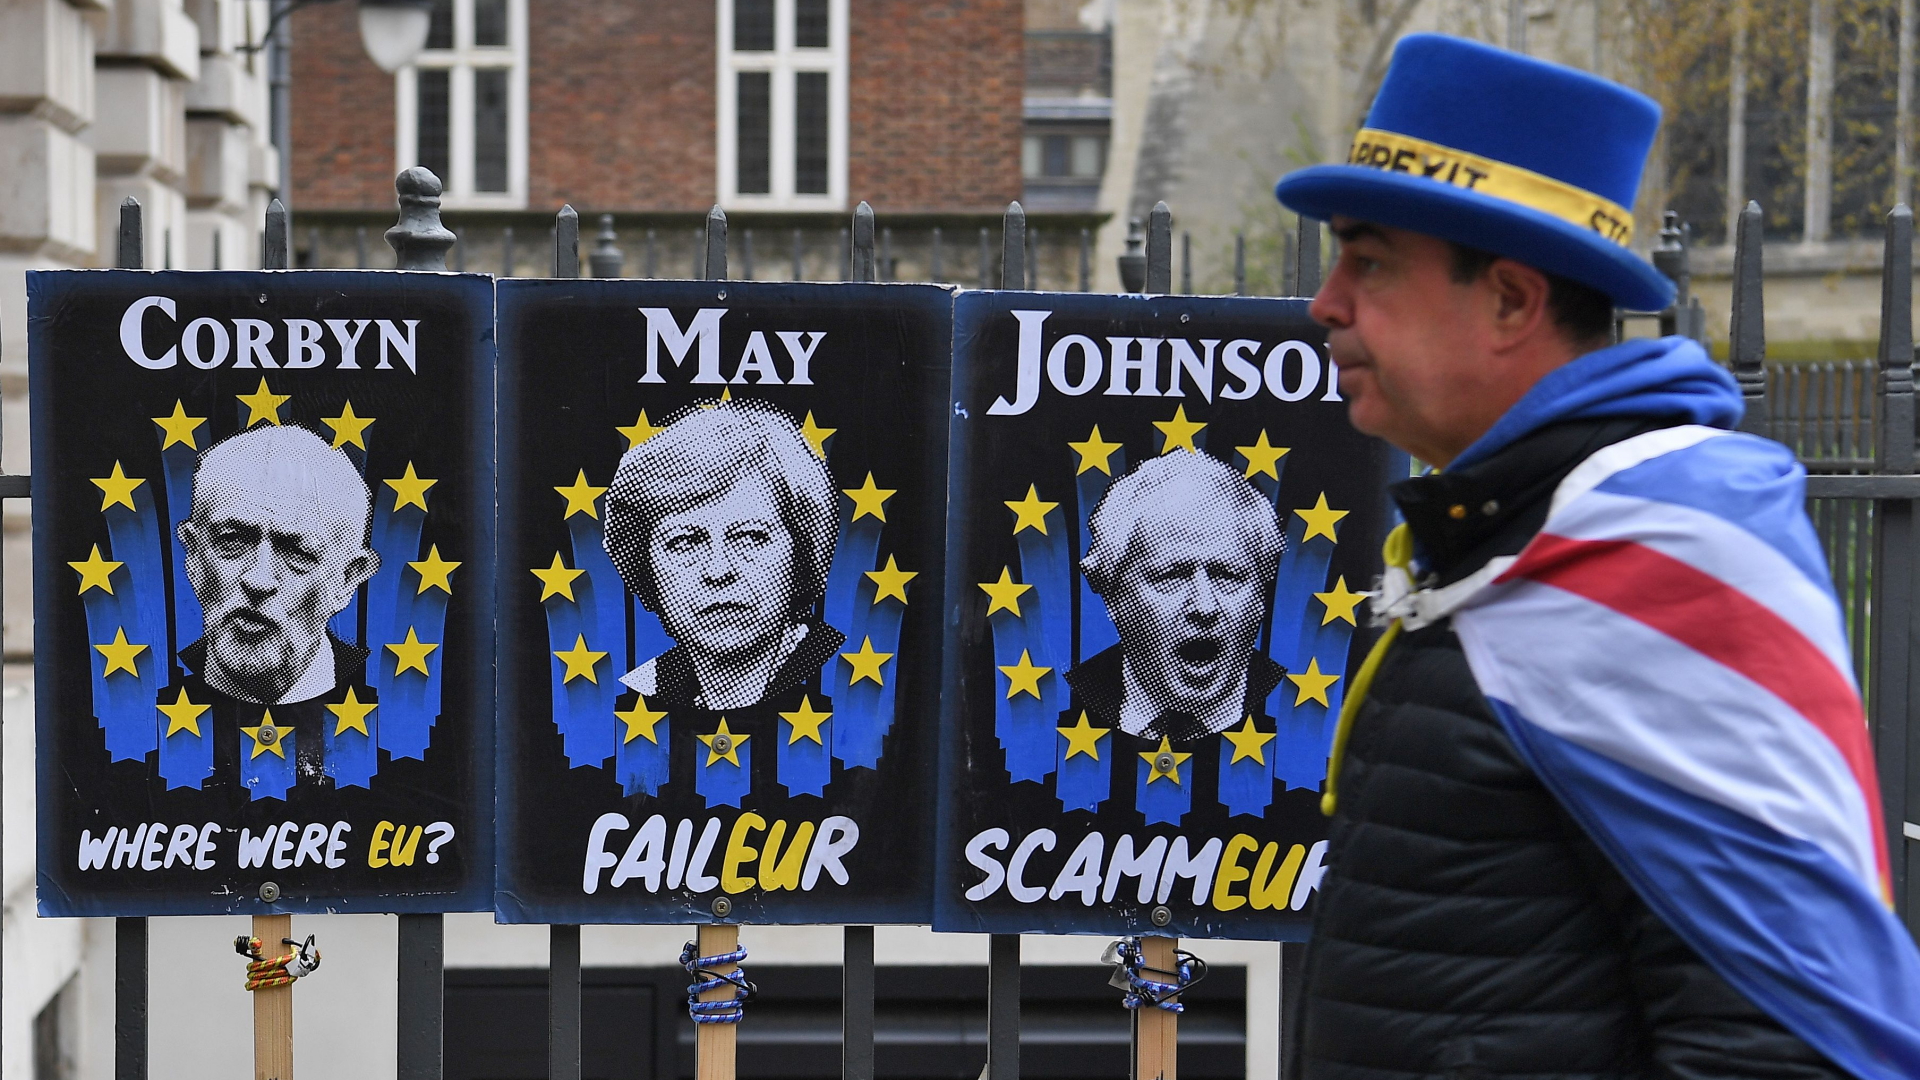 Ein Pro-EU-Demonstrant in London vor Plakaten mit britischen Spitzenpolitikern.  | ANDY RAIN/EPA-EFE/REX